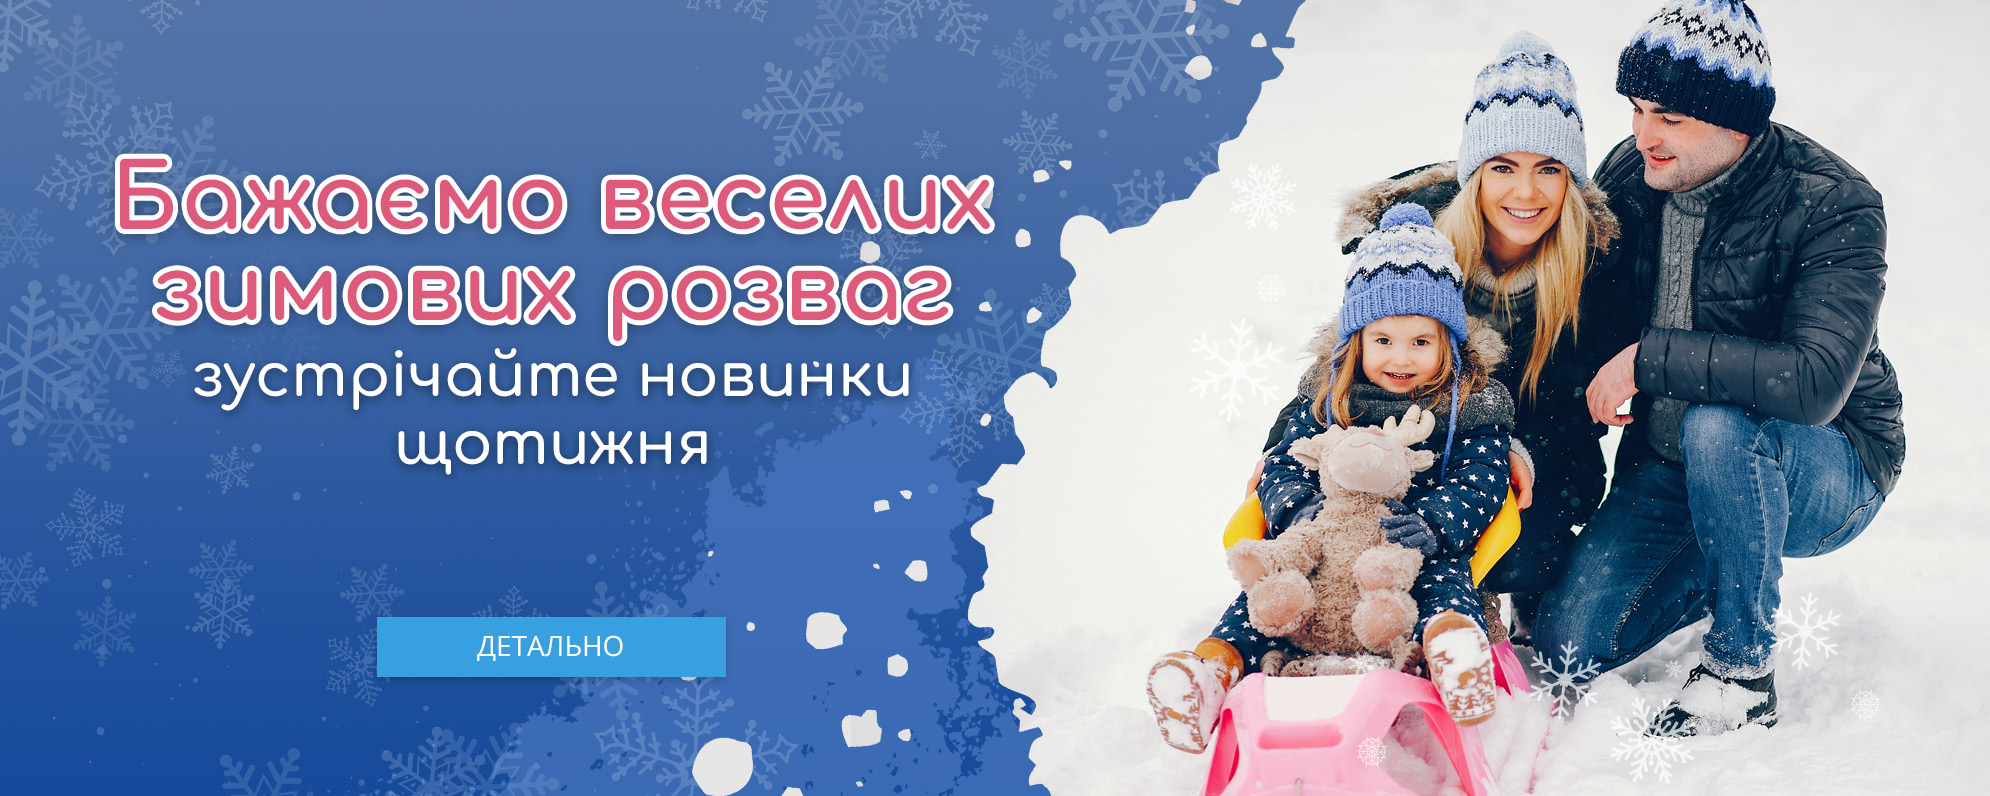 Бажаємо веселих зимових розваг!